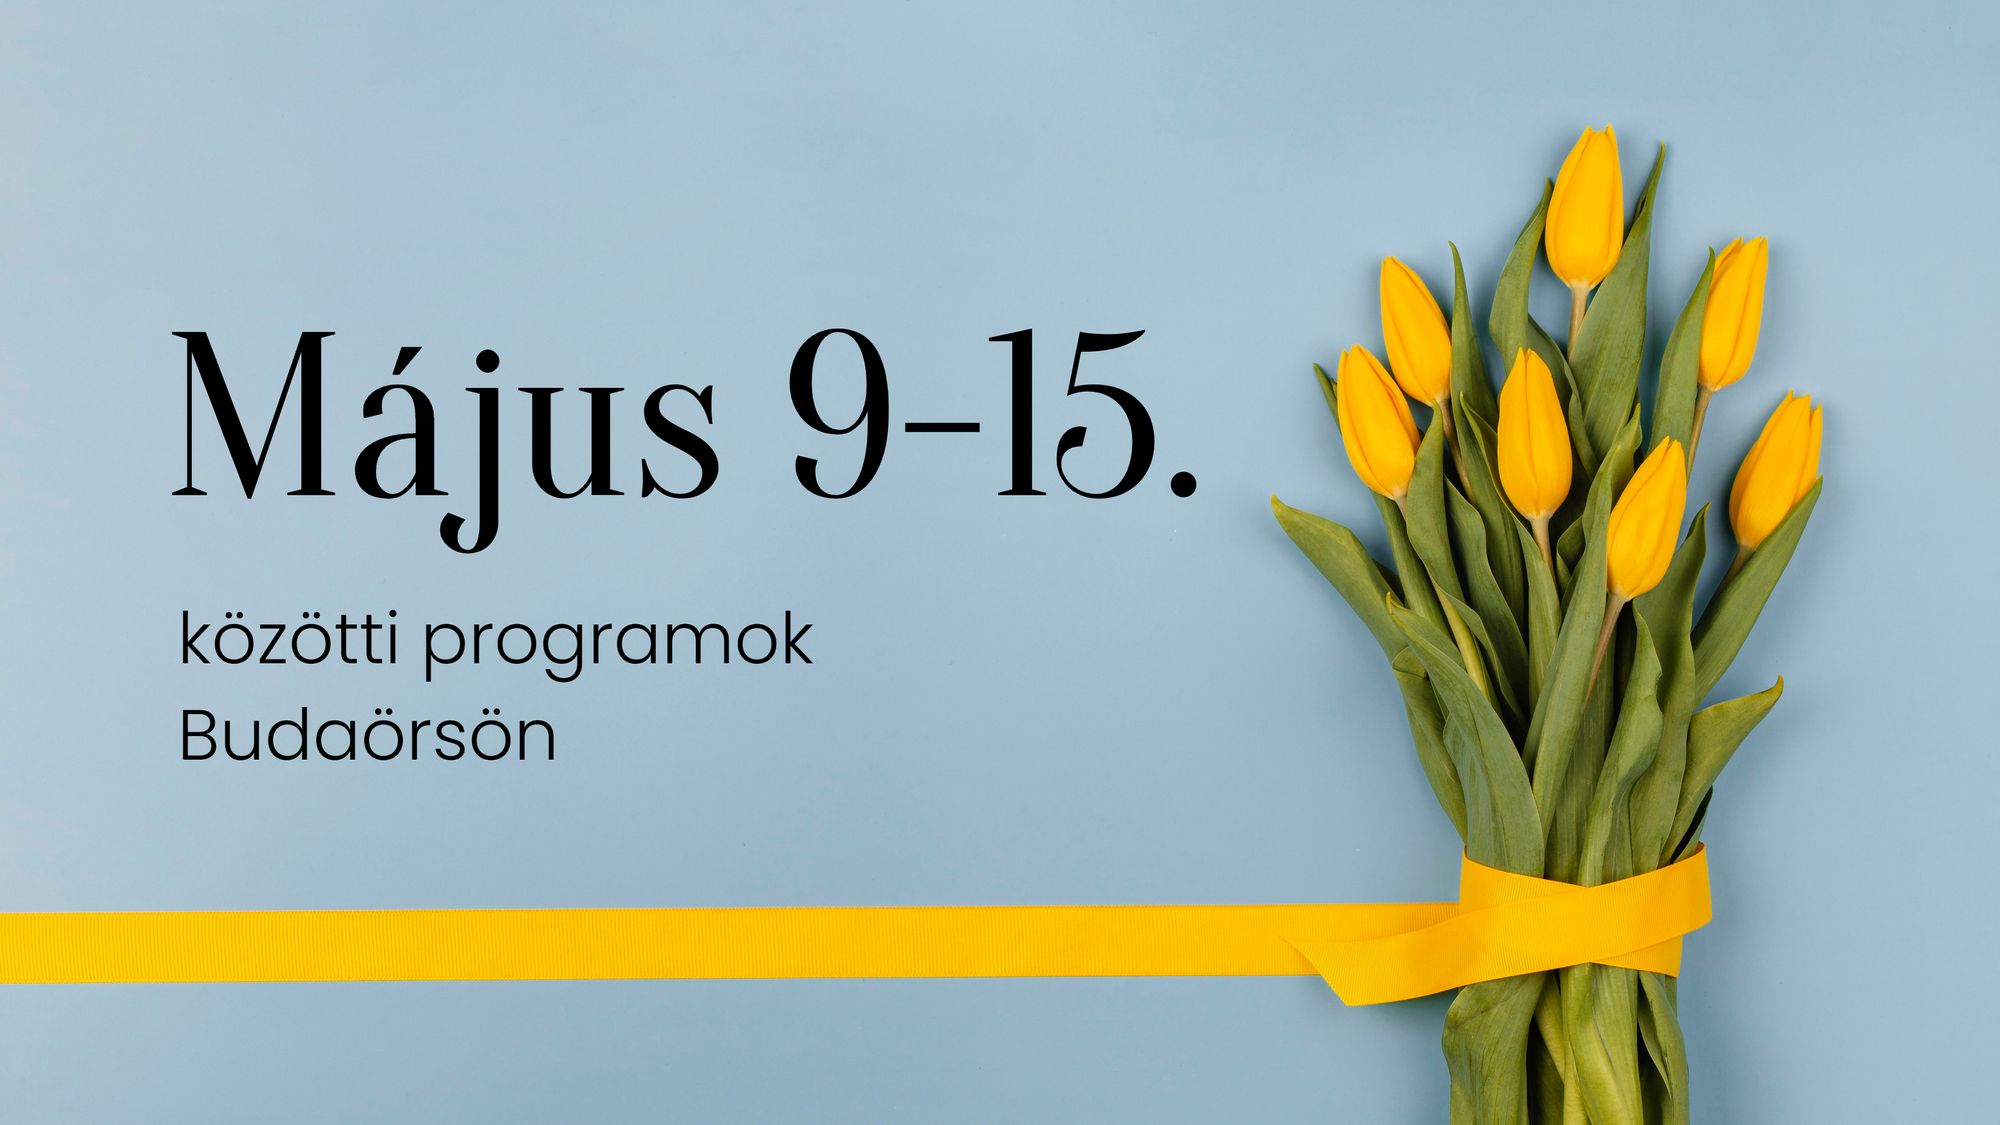 Május 9-15. közötti programok Budaörsön